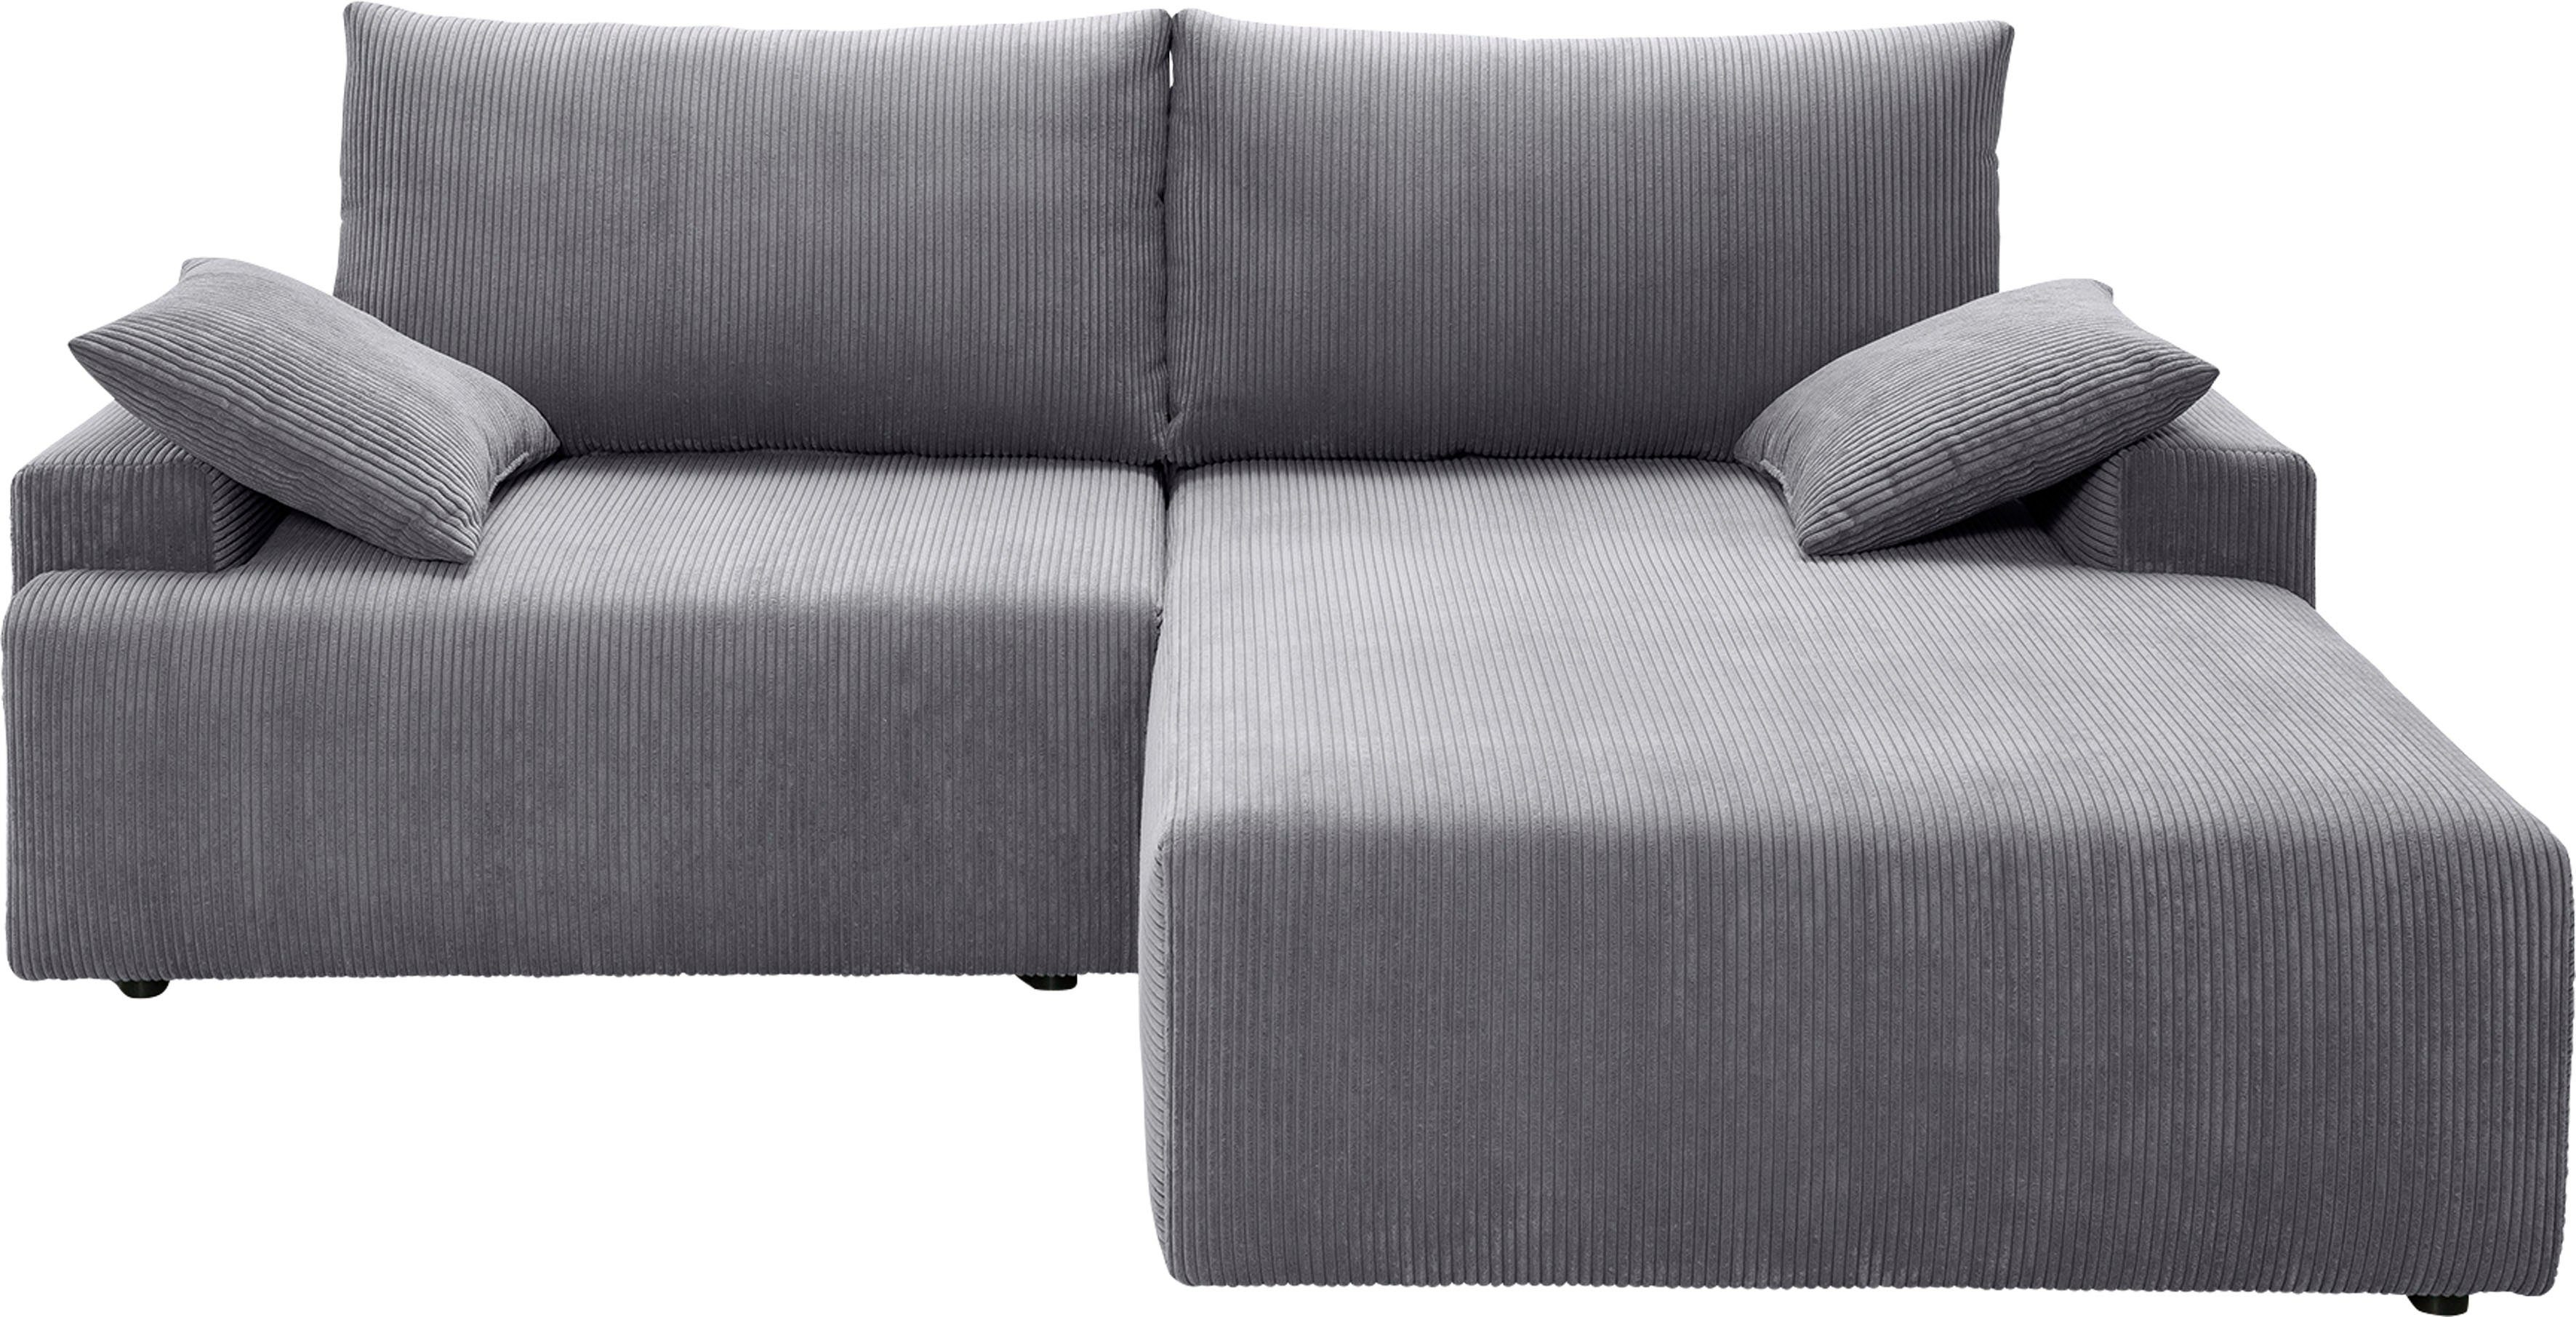 exxpo - Bettfunktion Ecksofa fashion in sofa und grey Bettkasten Cord-Farben inklusive Orinoko, verschiedenen